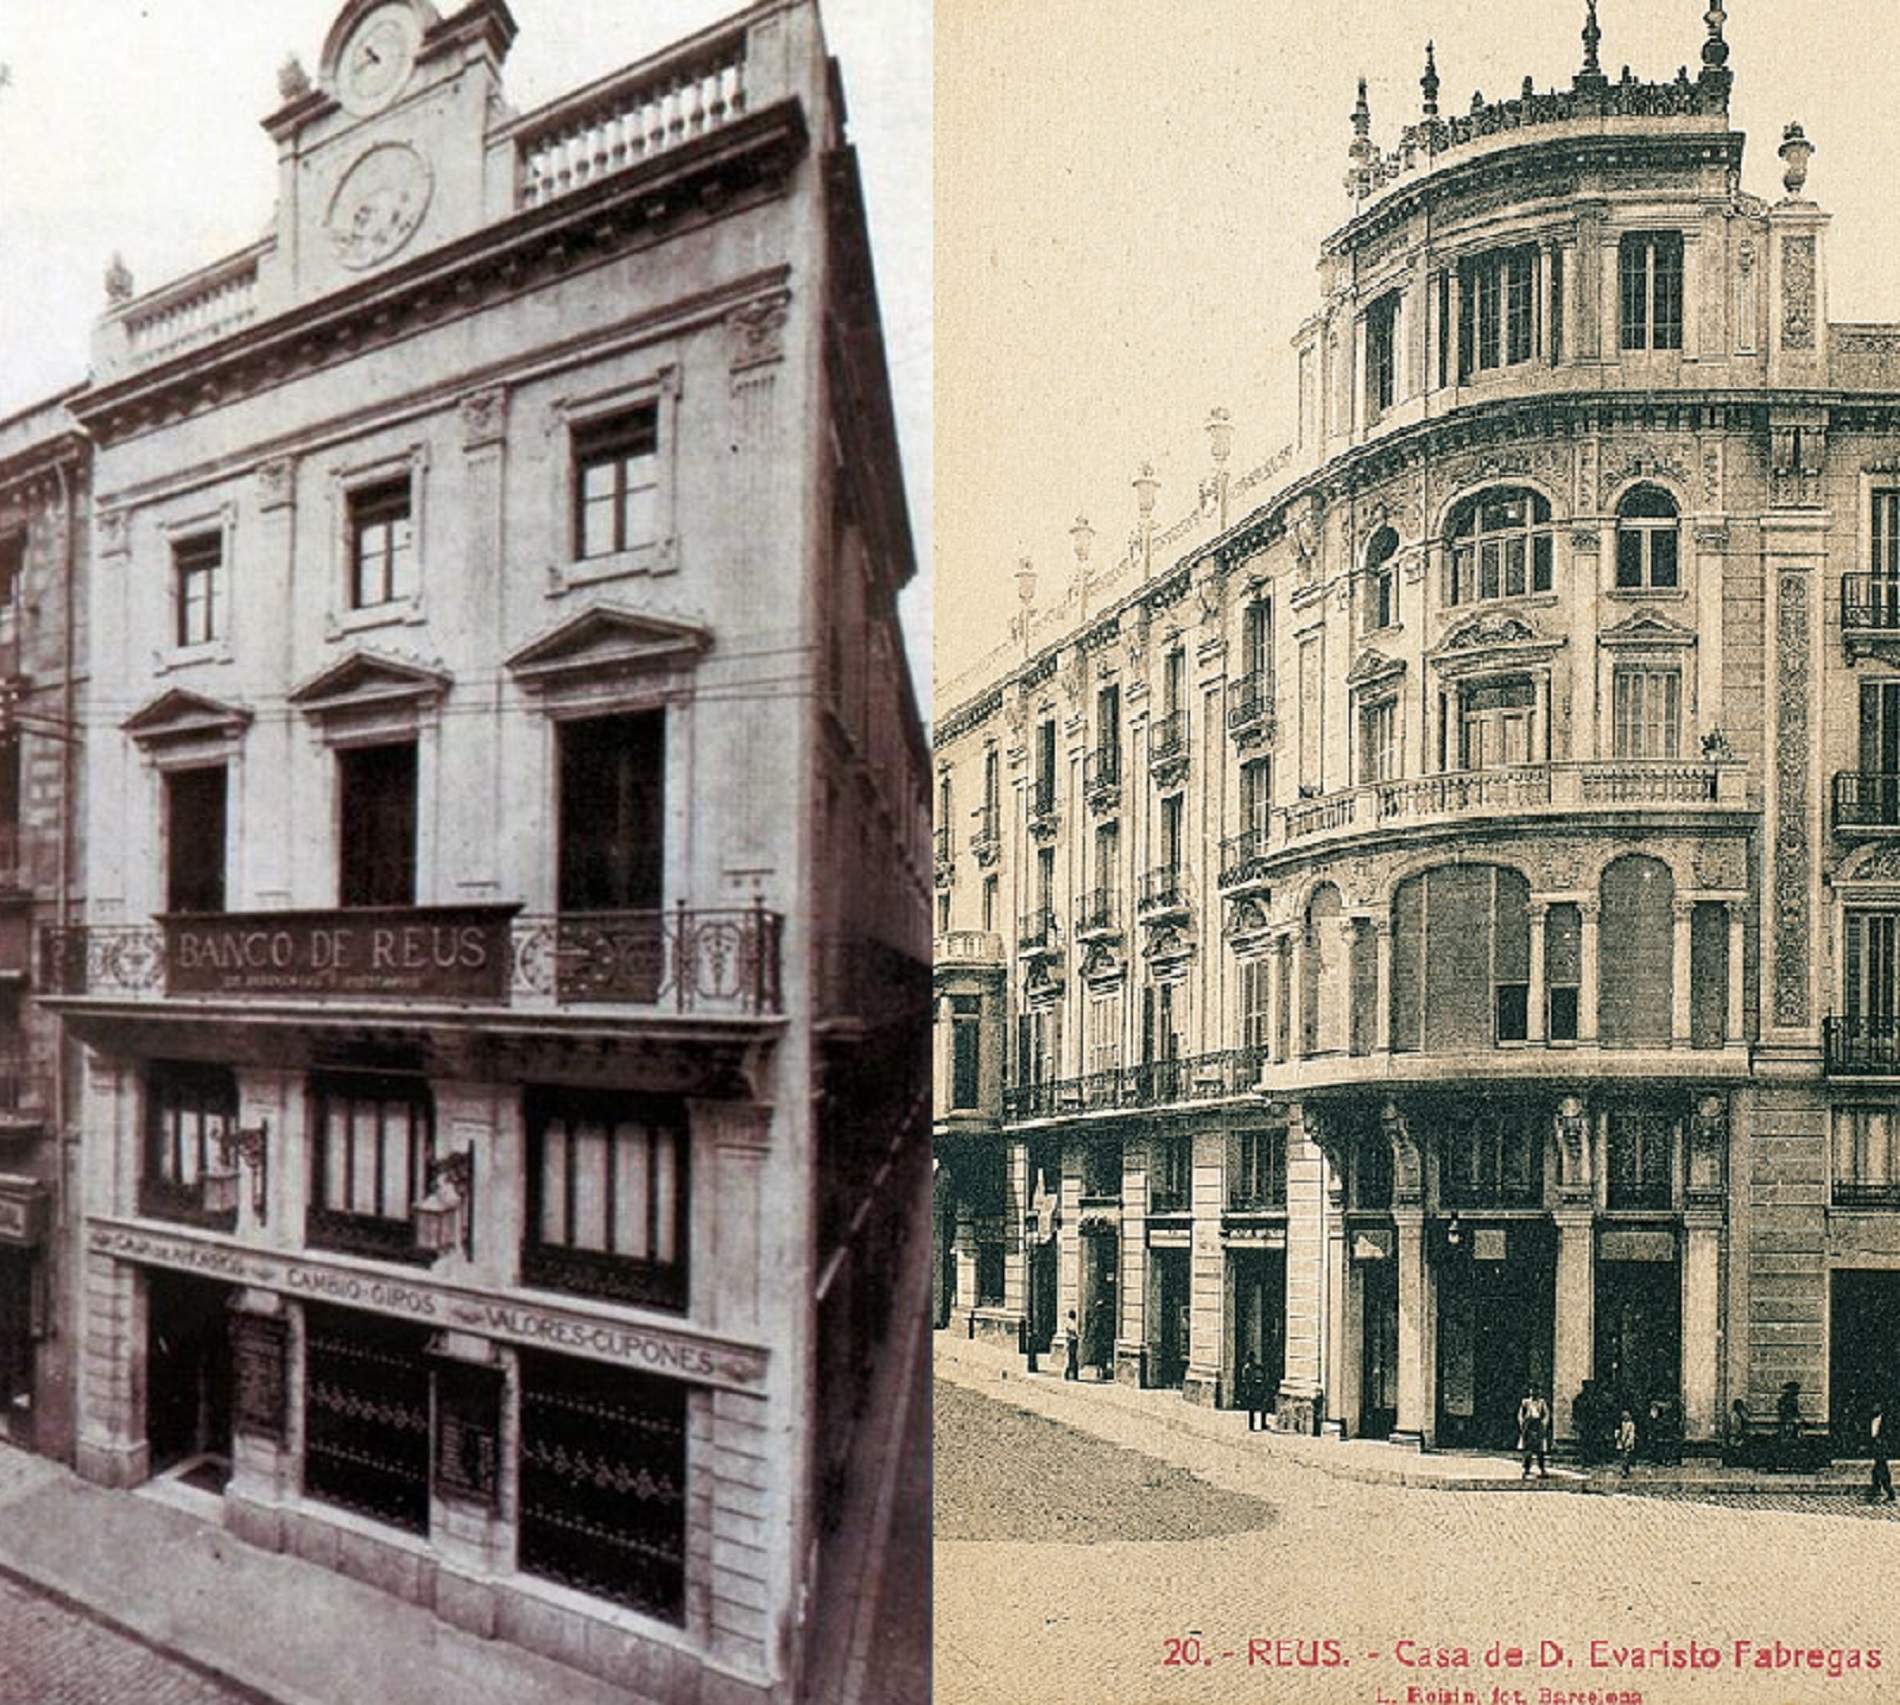 Seu central del Banc de Reus i casa d'Evarist Fàbregas, màxim accionista del banc. Font Wikimedia Commons i Enciclopèdia Catalana